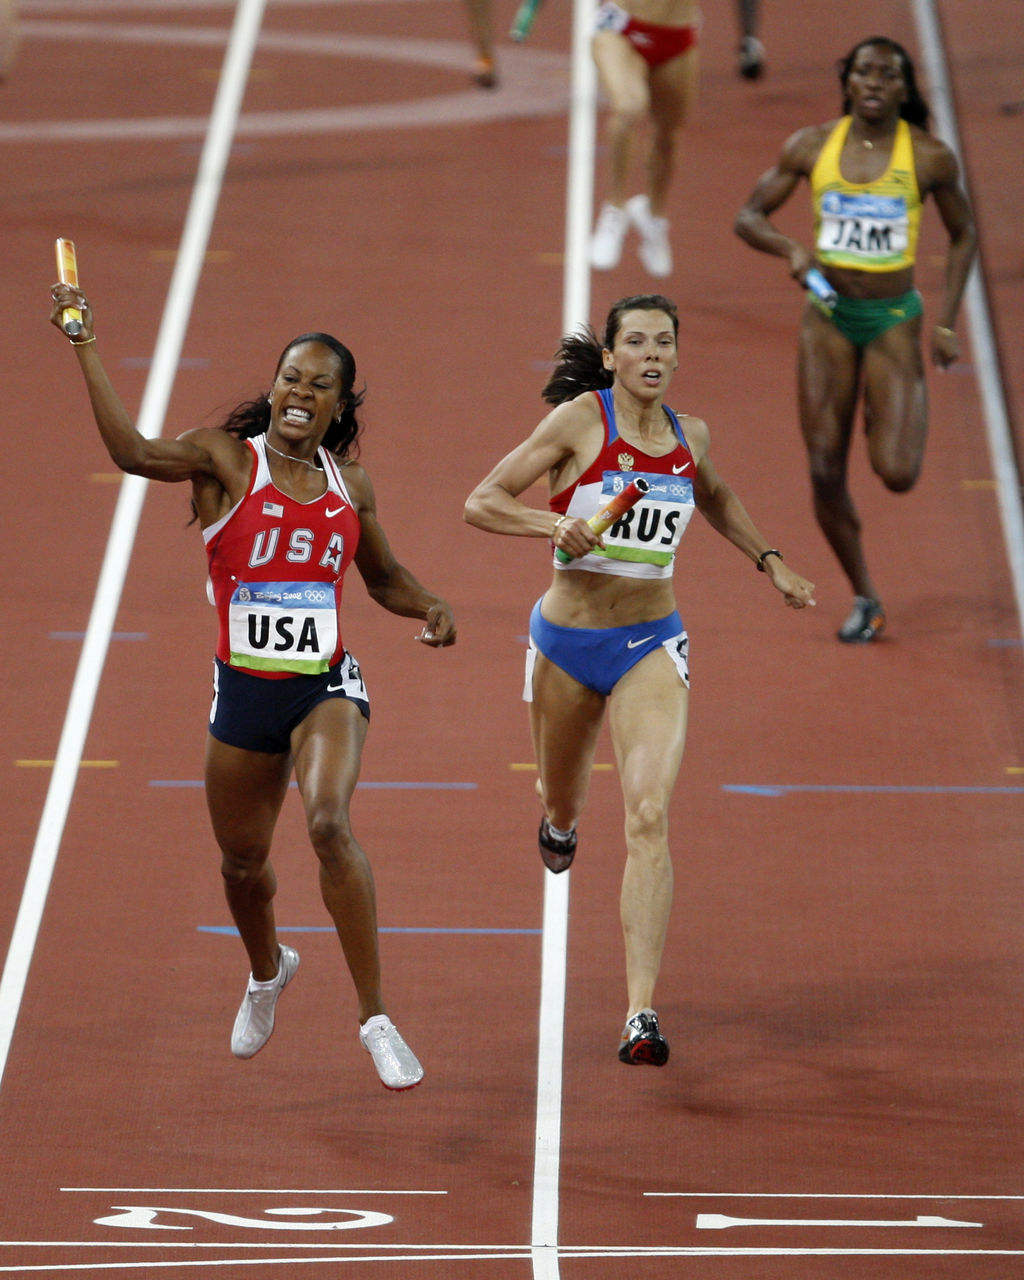 La rusa Anastasia Kapachinskaya tendrá que devolver su medalla de plata obtenida en los Juegos Olímpicos de Beijing 2008. (Archivo)